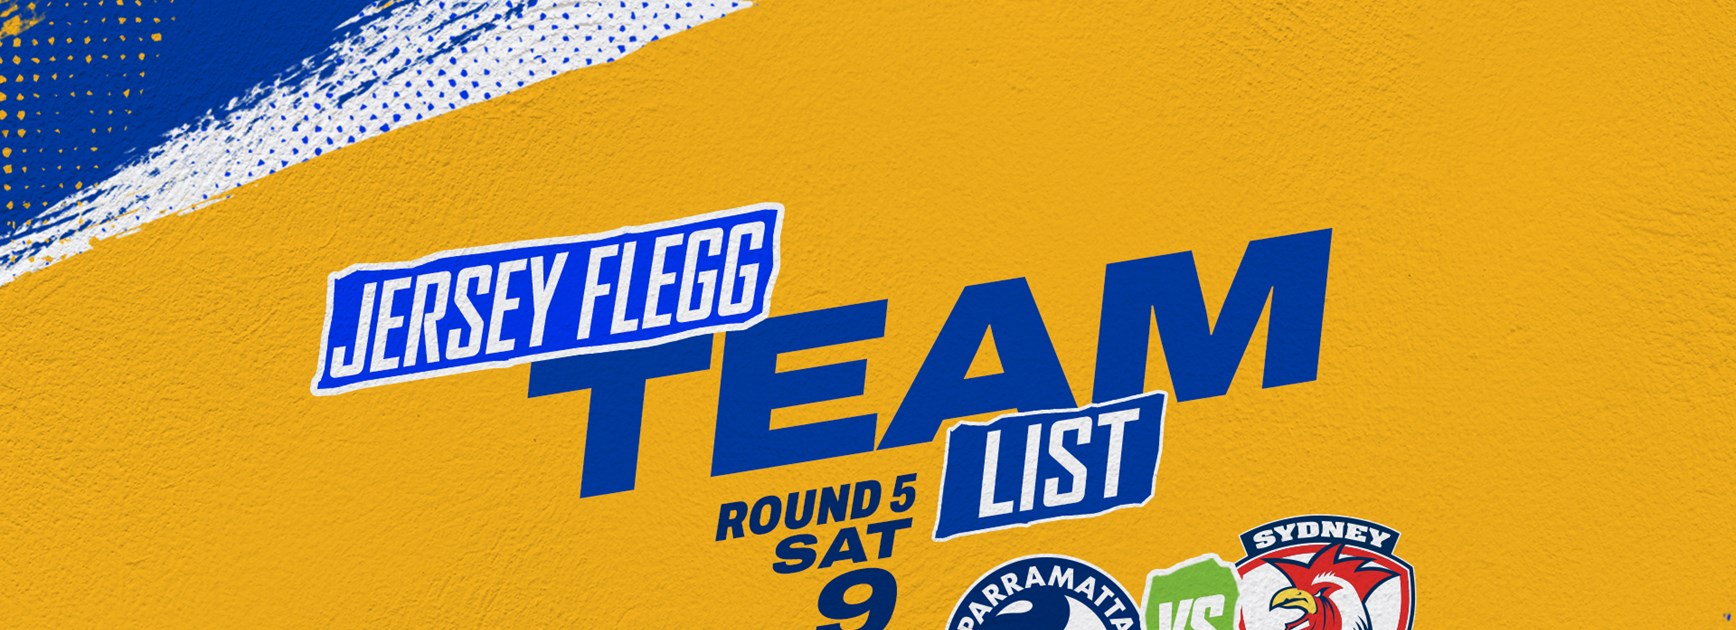 Jersey Flegg Cup Team List - Round Five